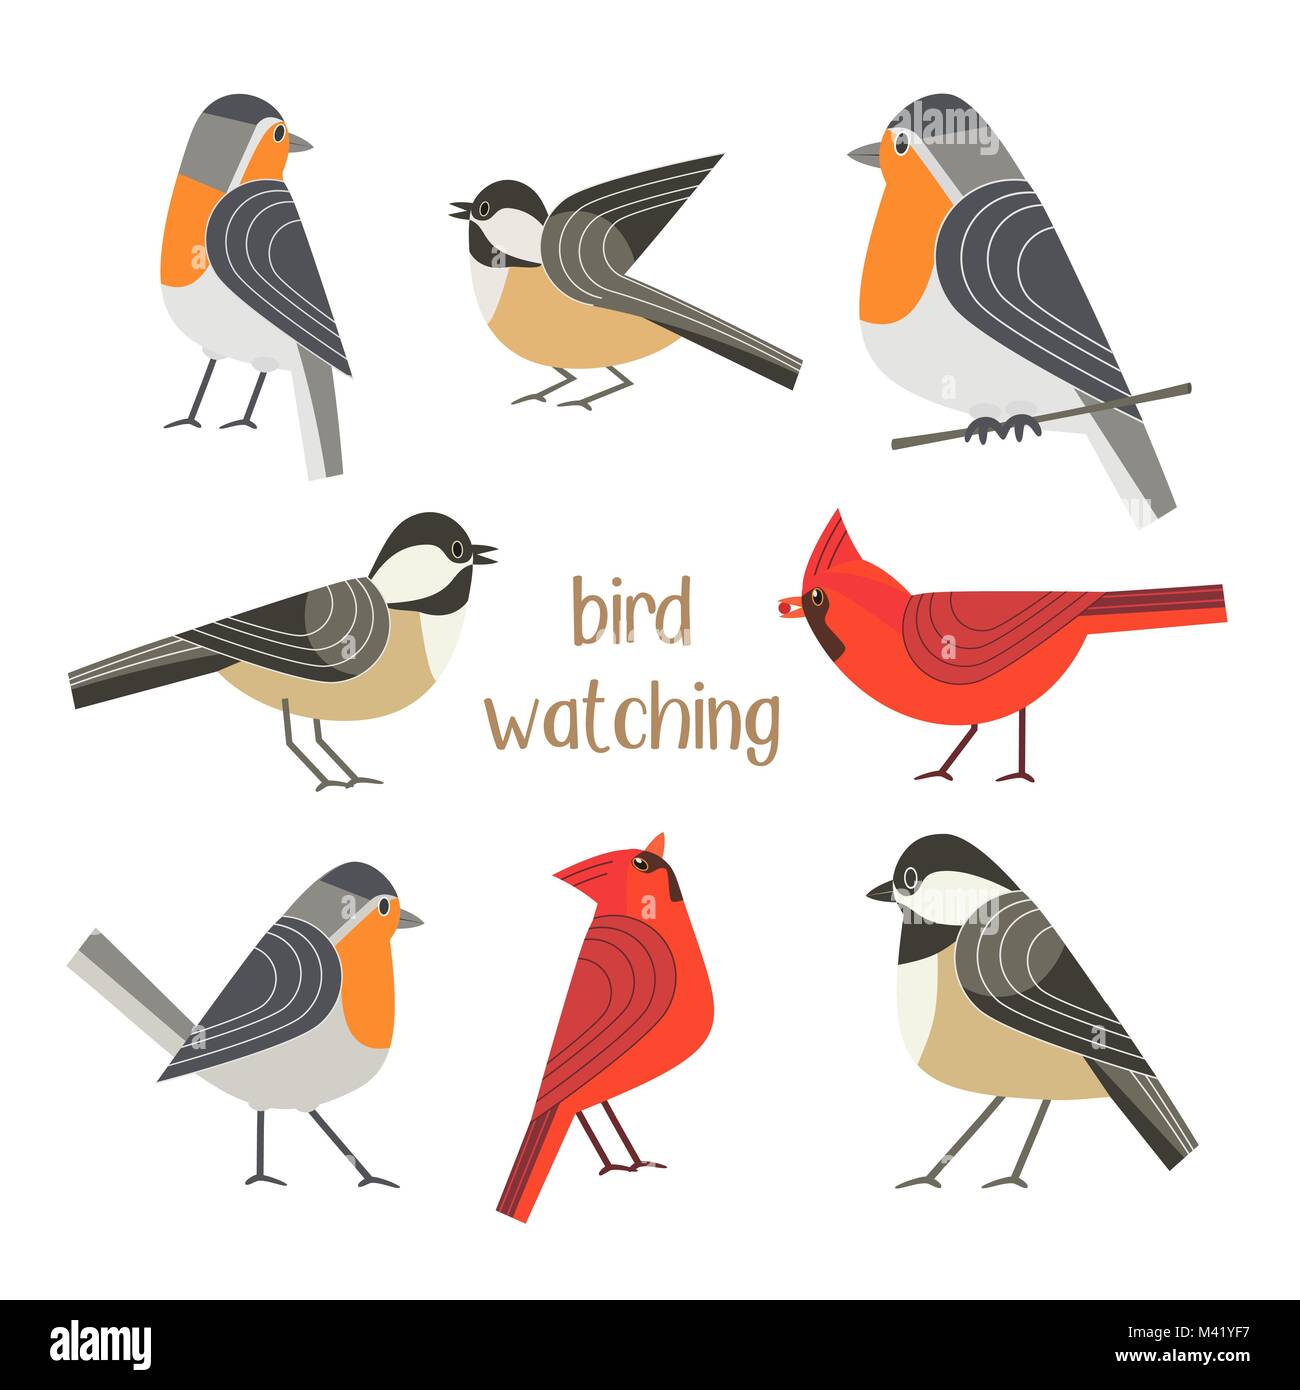 Bird watching poster Stock Vector